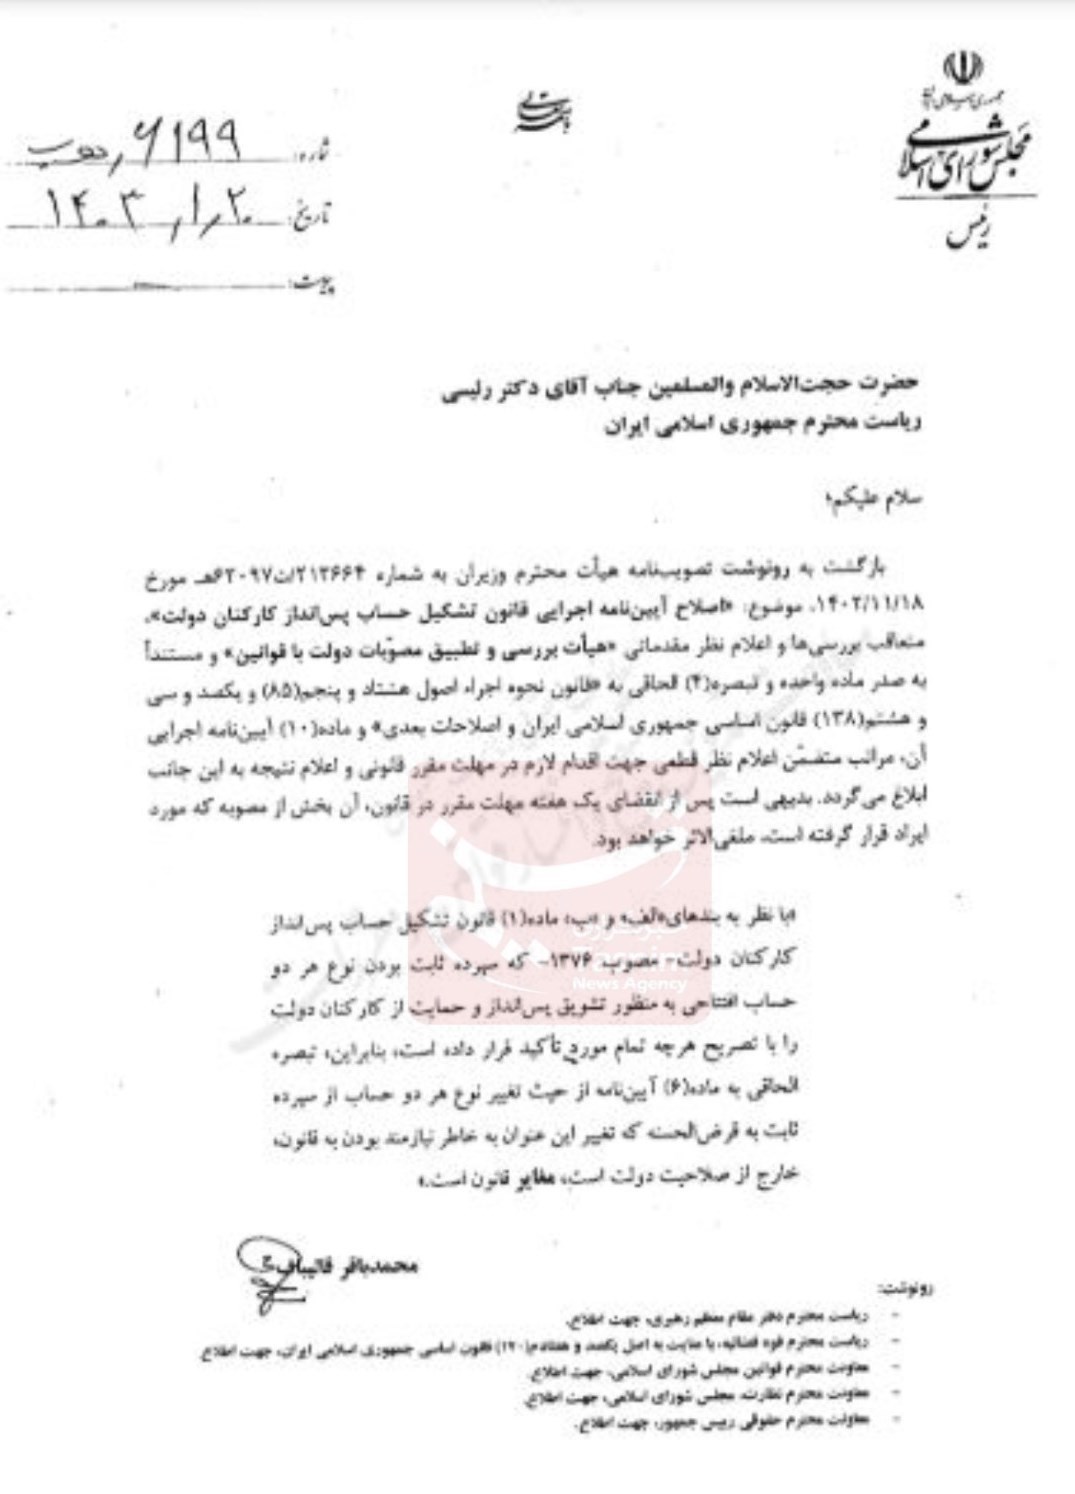 نامه مهم قالیباف به رئیسی درباره آیین نامه حساب پس انداز کارکنان دولت 2